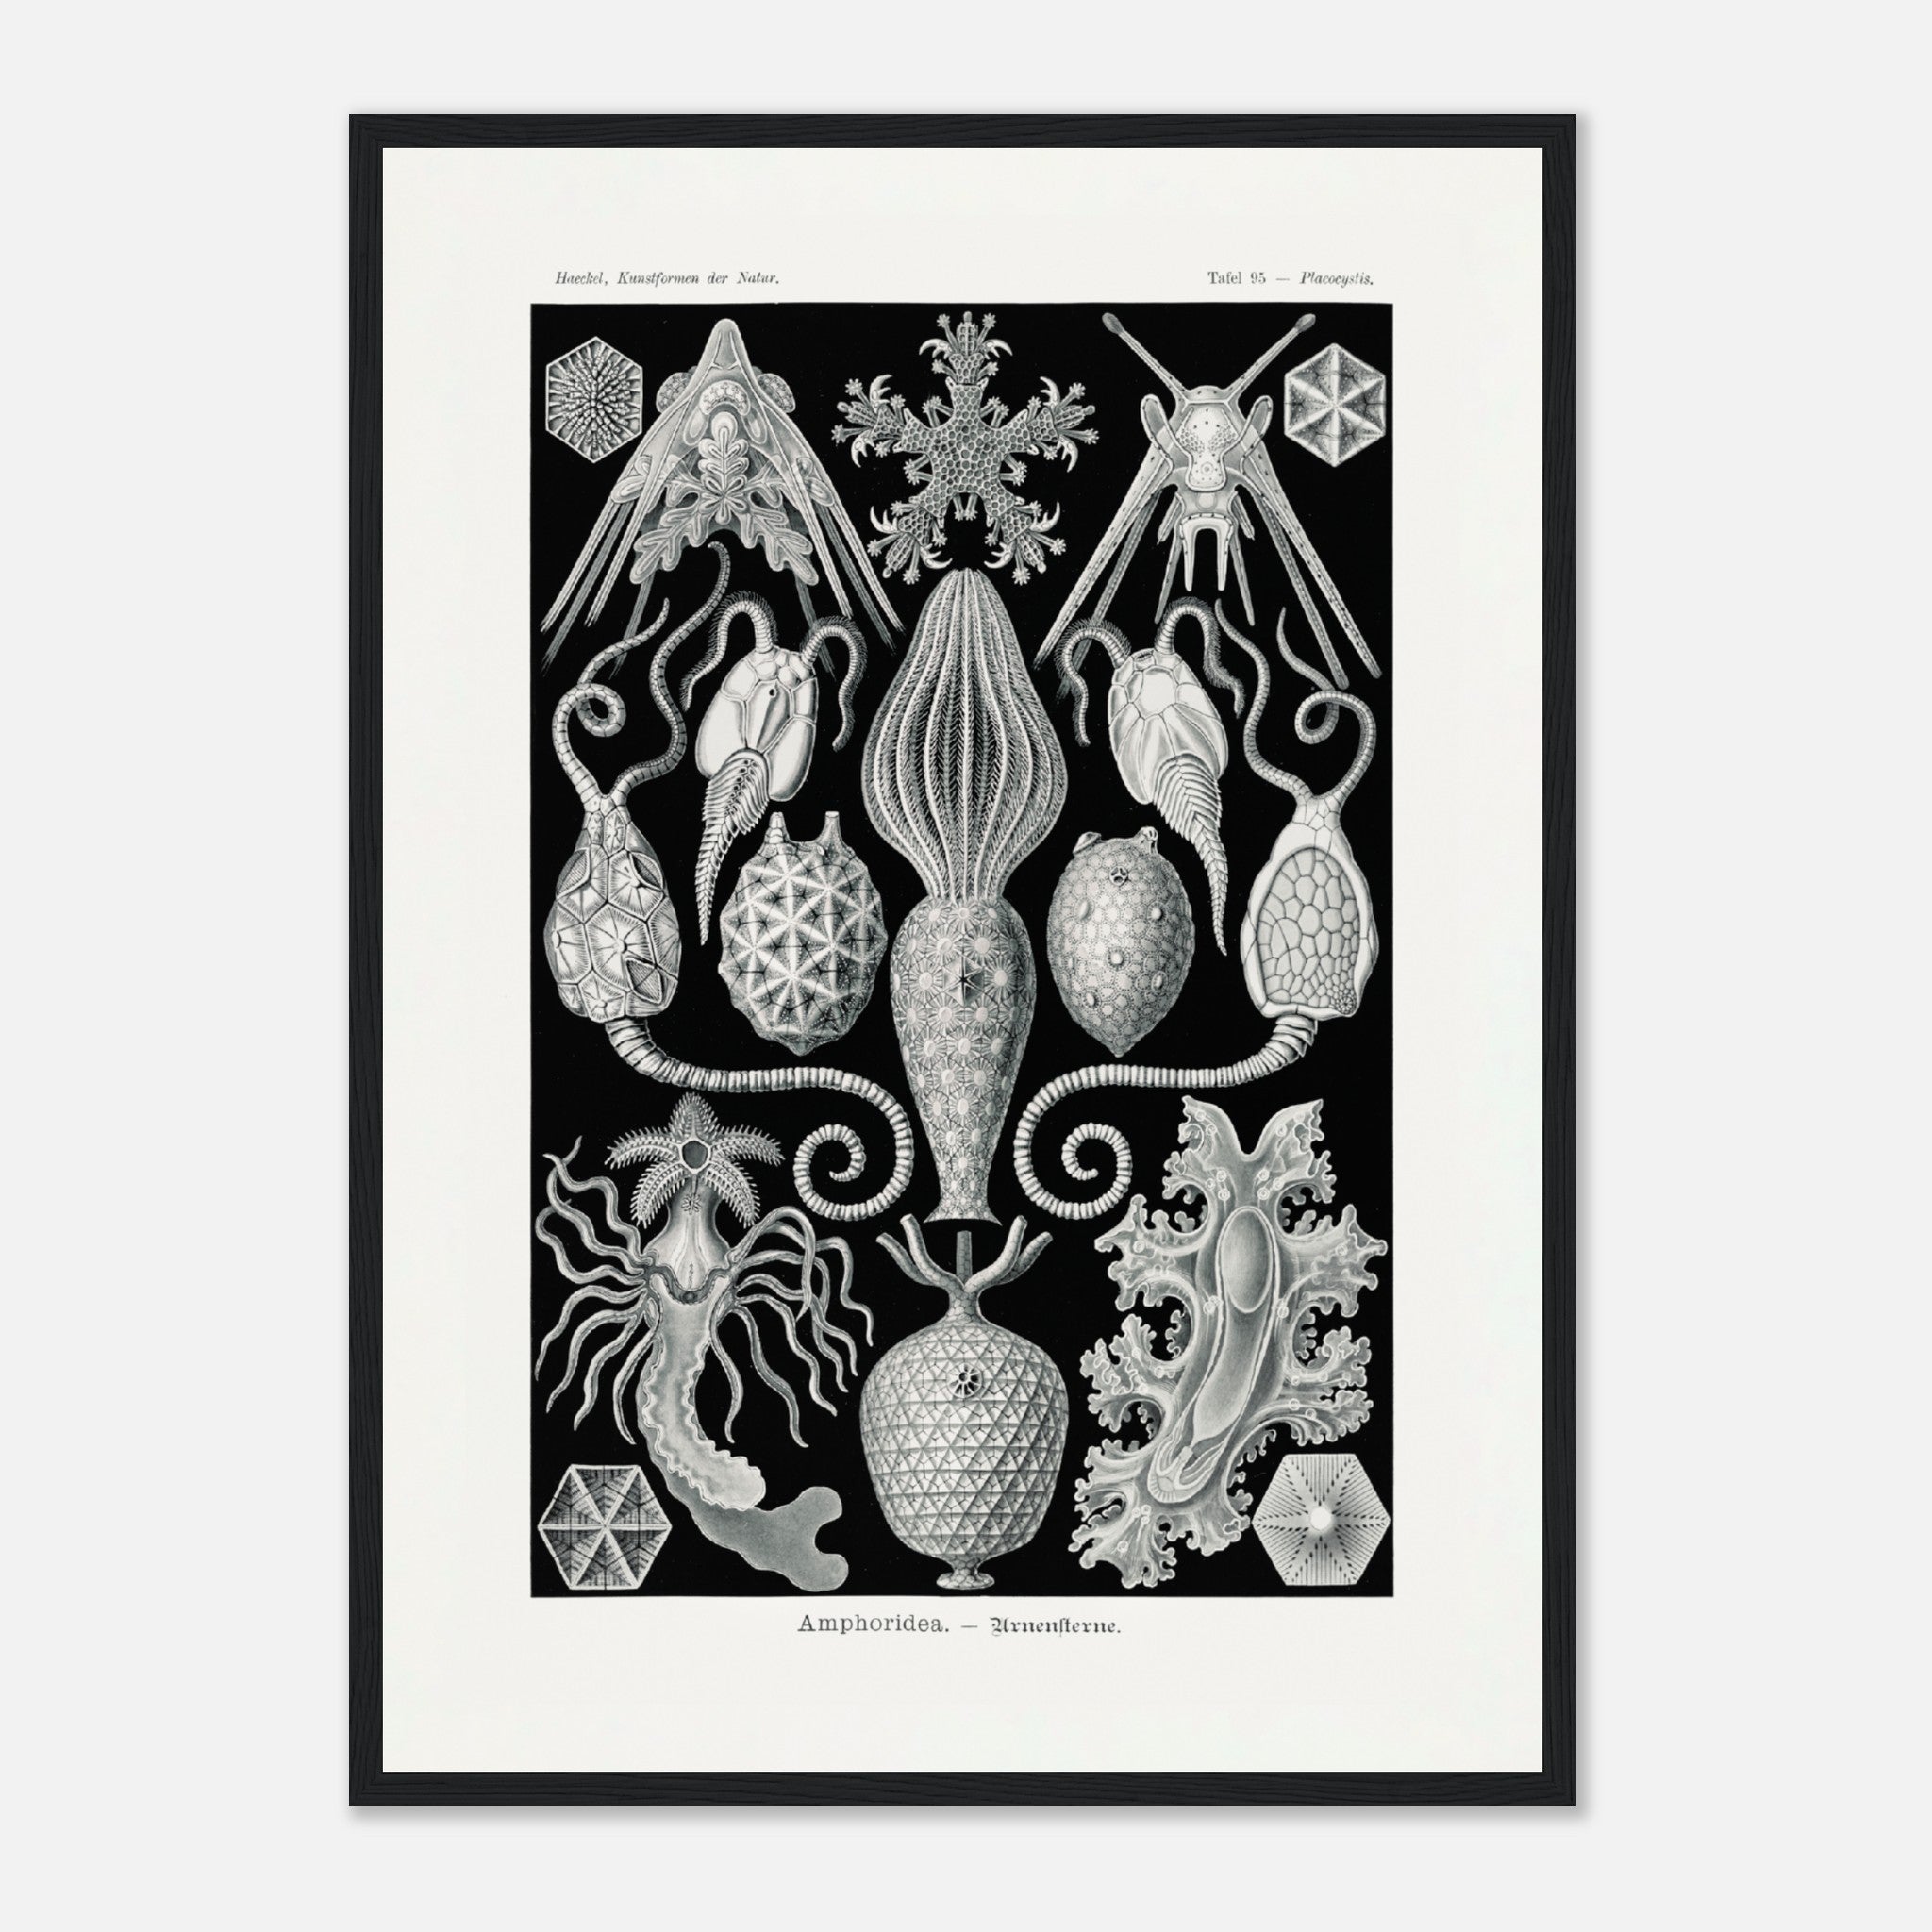 Amphoridea Urnensterne por Ernst Haeckel Póster